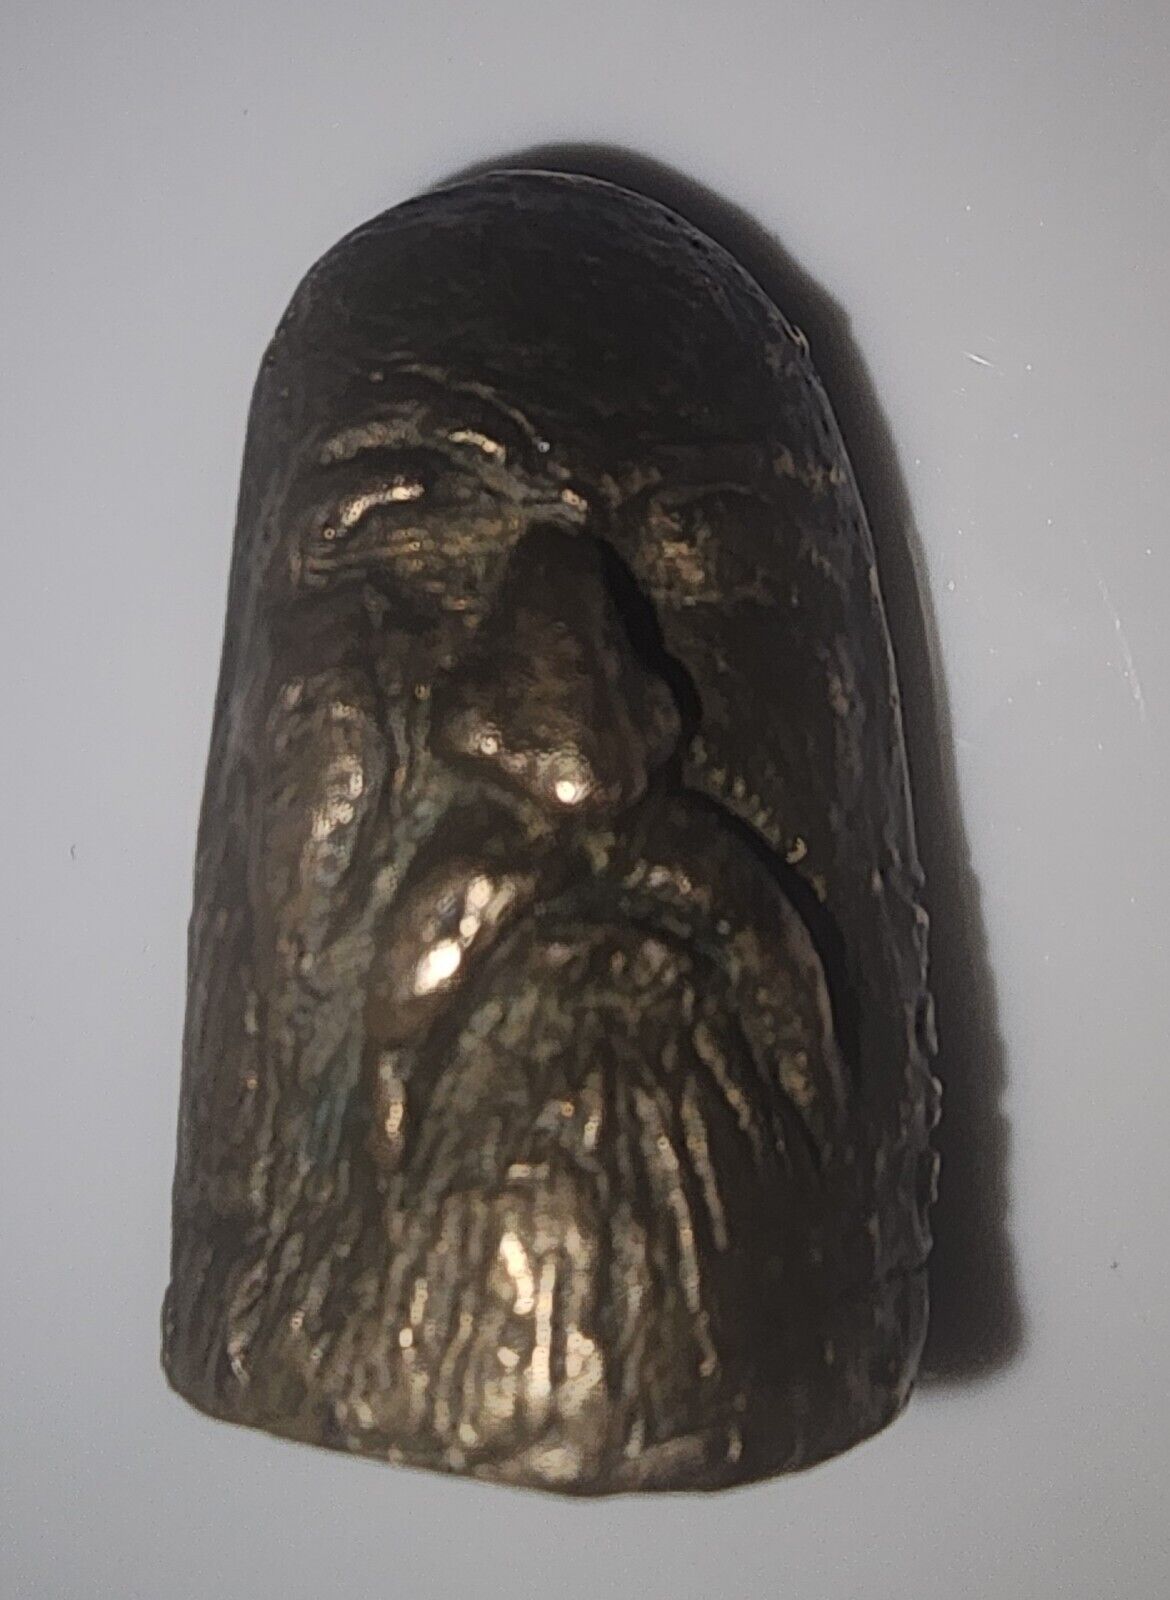 Vintage Brass Monk Finger Sculpture - RARE ONE-OF-A-KIND